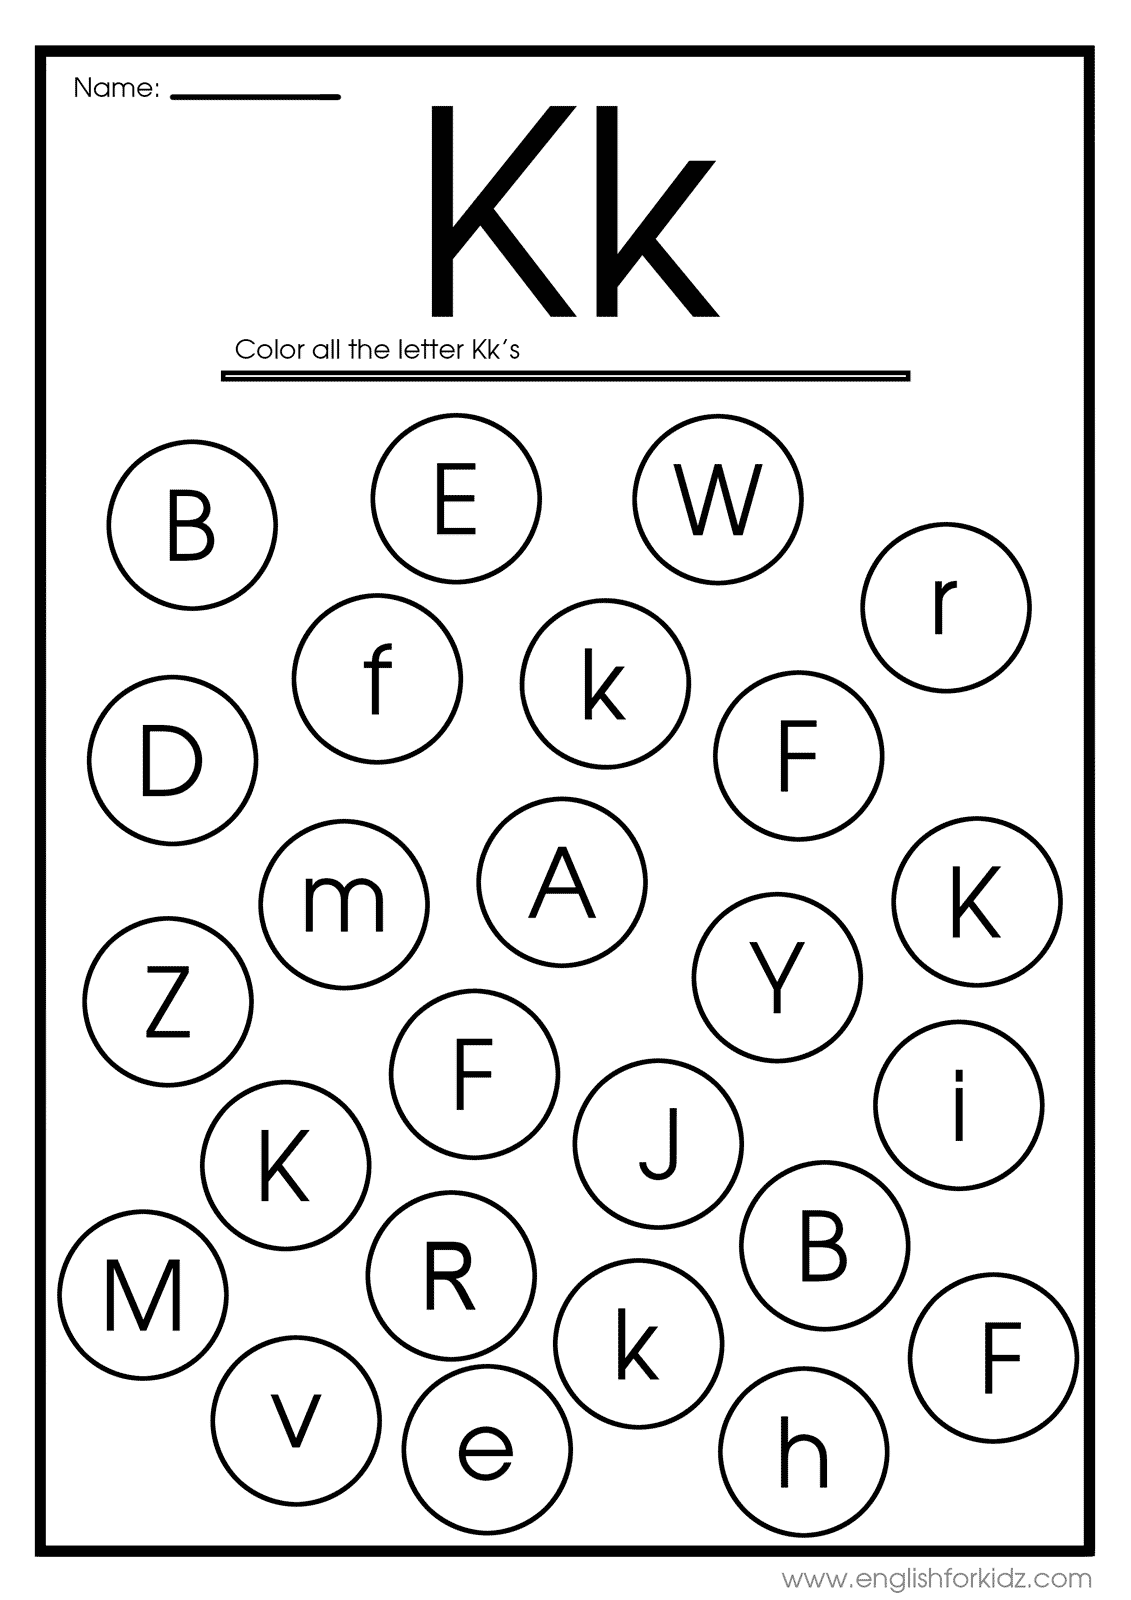 k-12-printable-worksheet